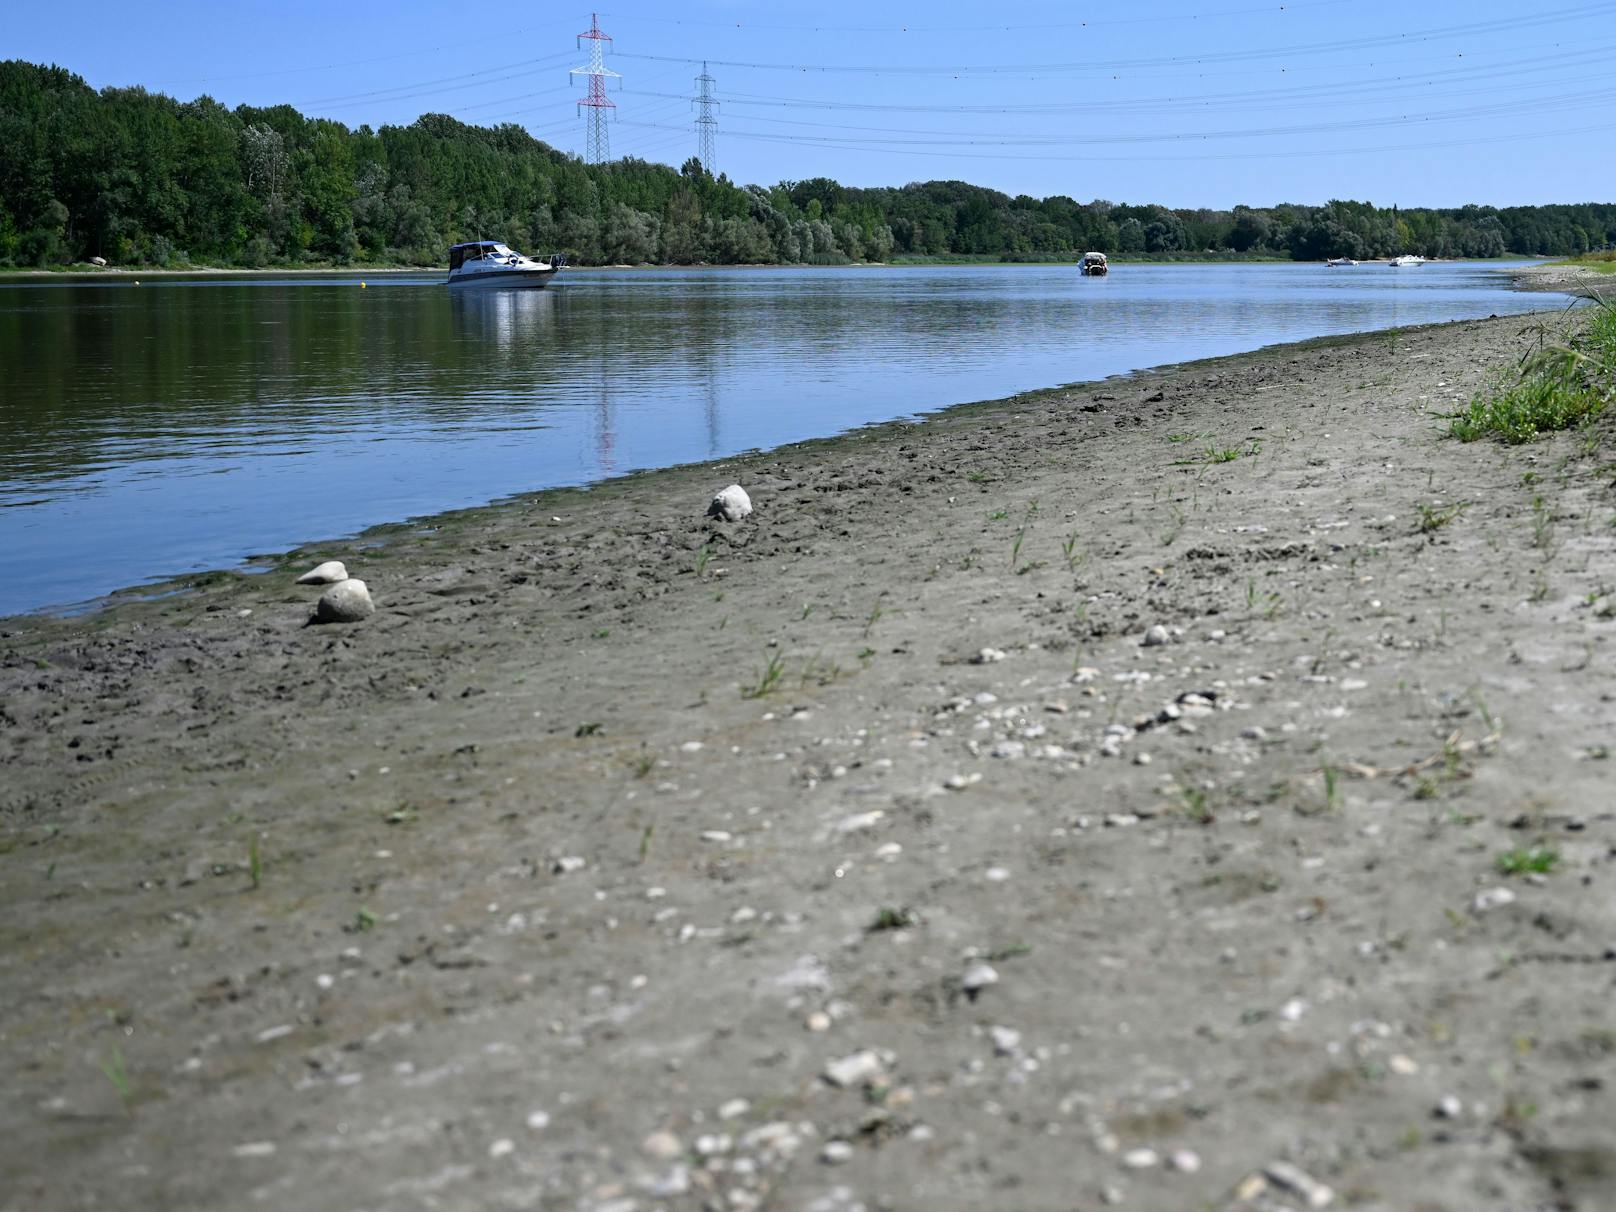 Niedrigwassersituation am Donaualtarm von Altenwörth. Hitze und Dürre in Europa lassen Flüsse austrocknen, auch Grundwasserspiegel sinken historisch tief.